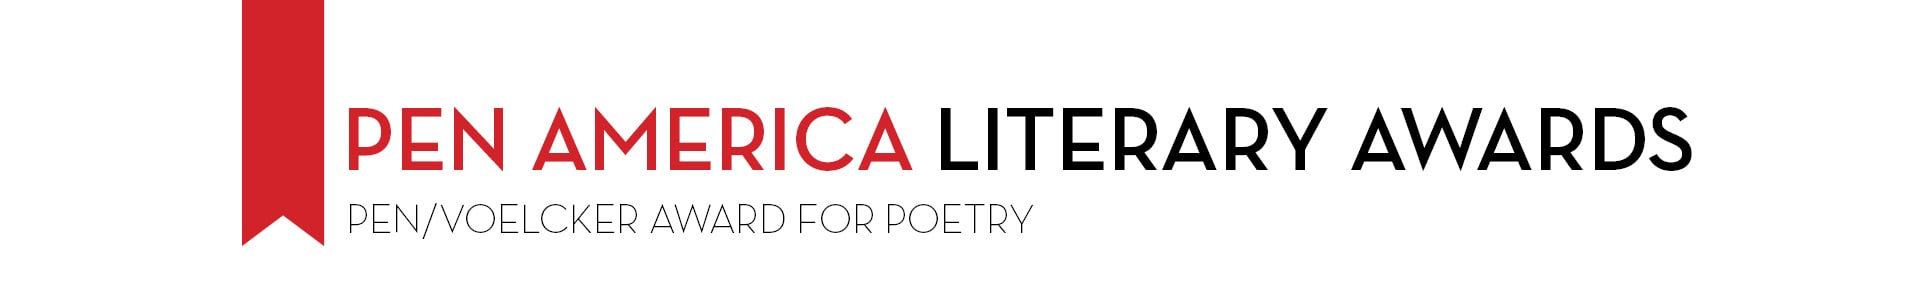 PEN America Literary Awards PEN/Voelcker Award for Poetry